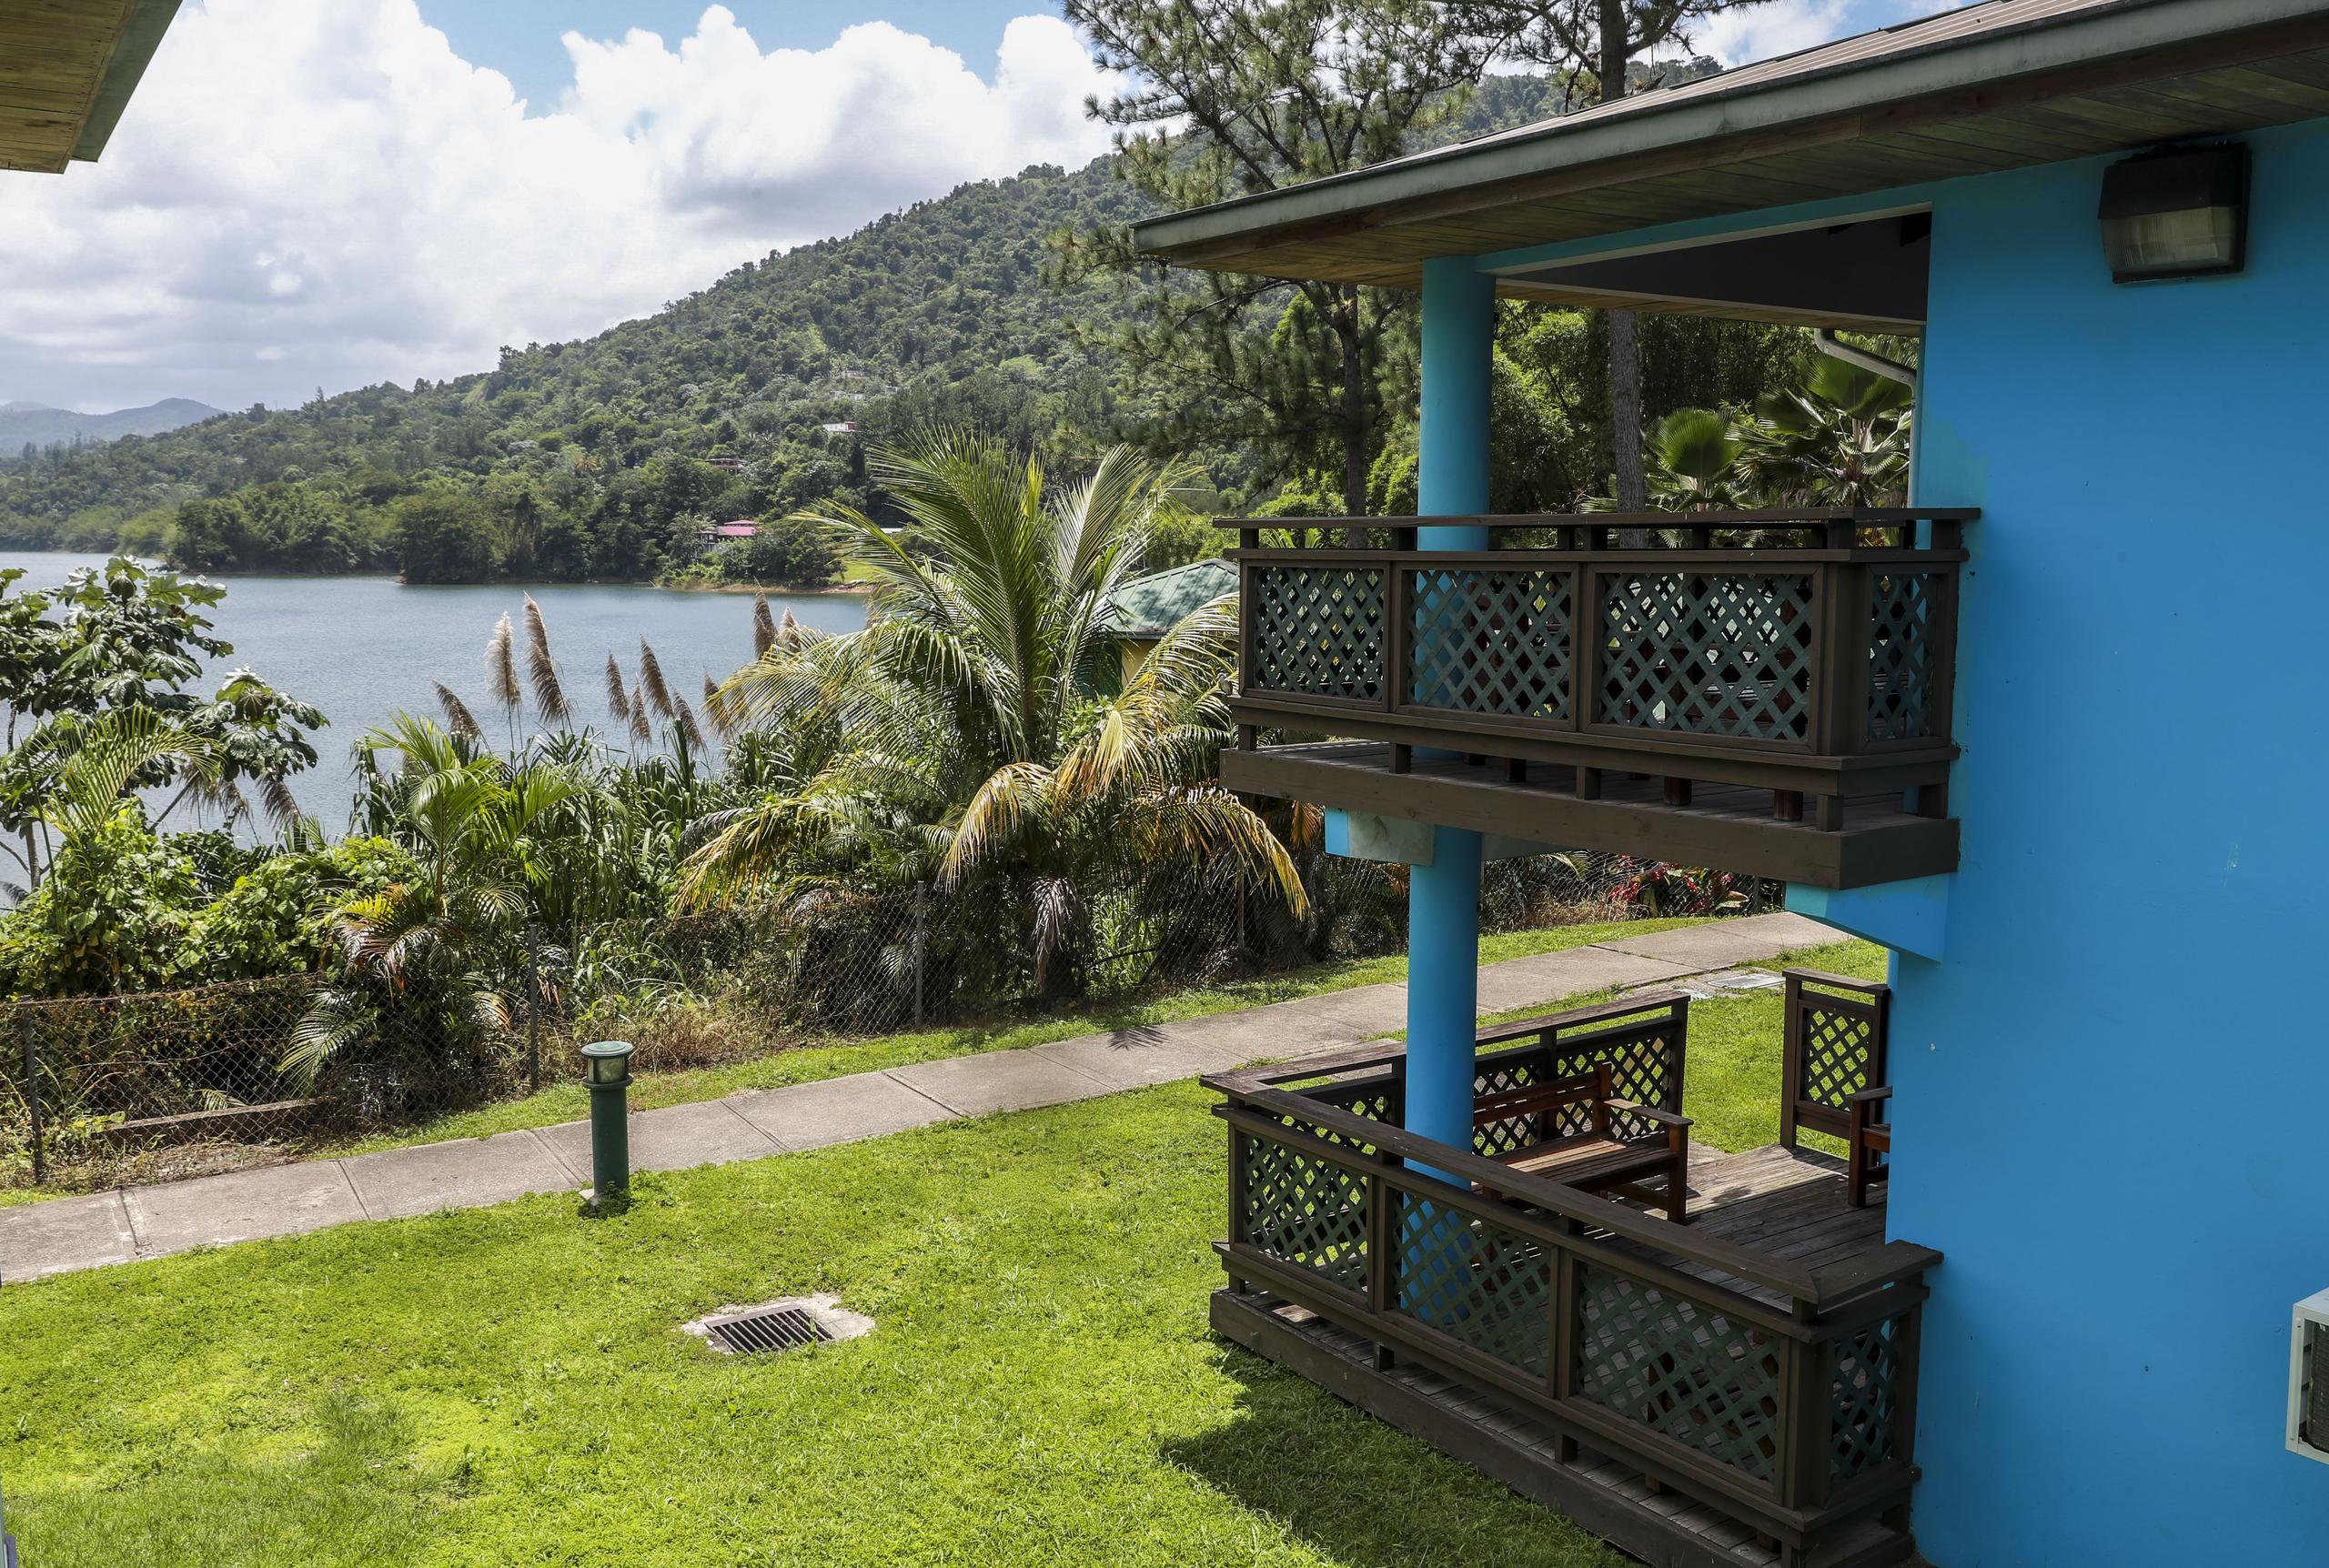 Las villas tienen unas impresionantes vistas hacia el lago Caonillas y al entorno natural que las rodea.